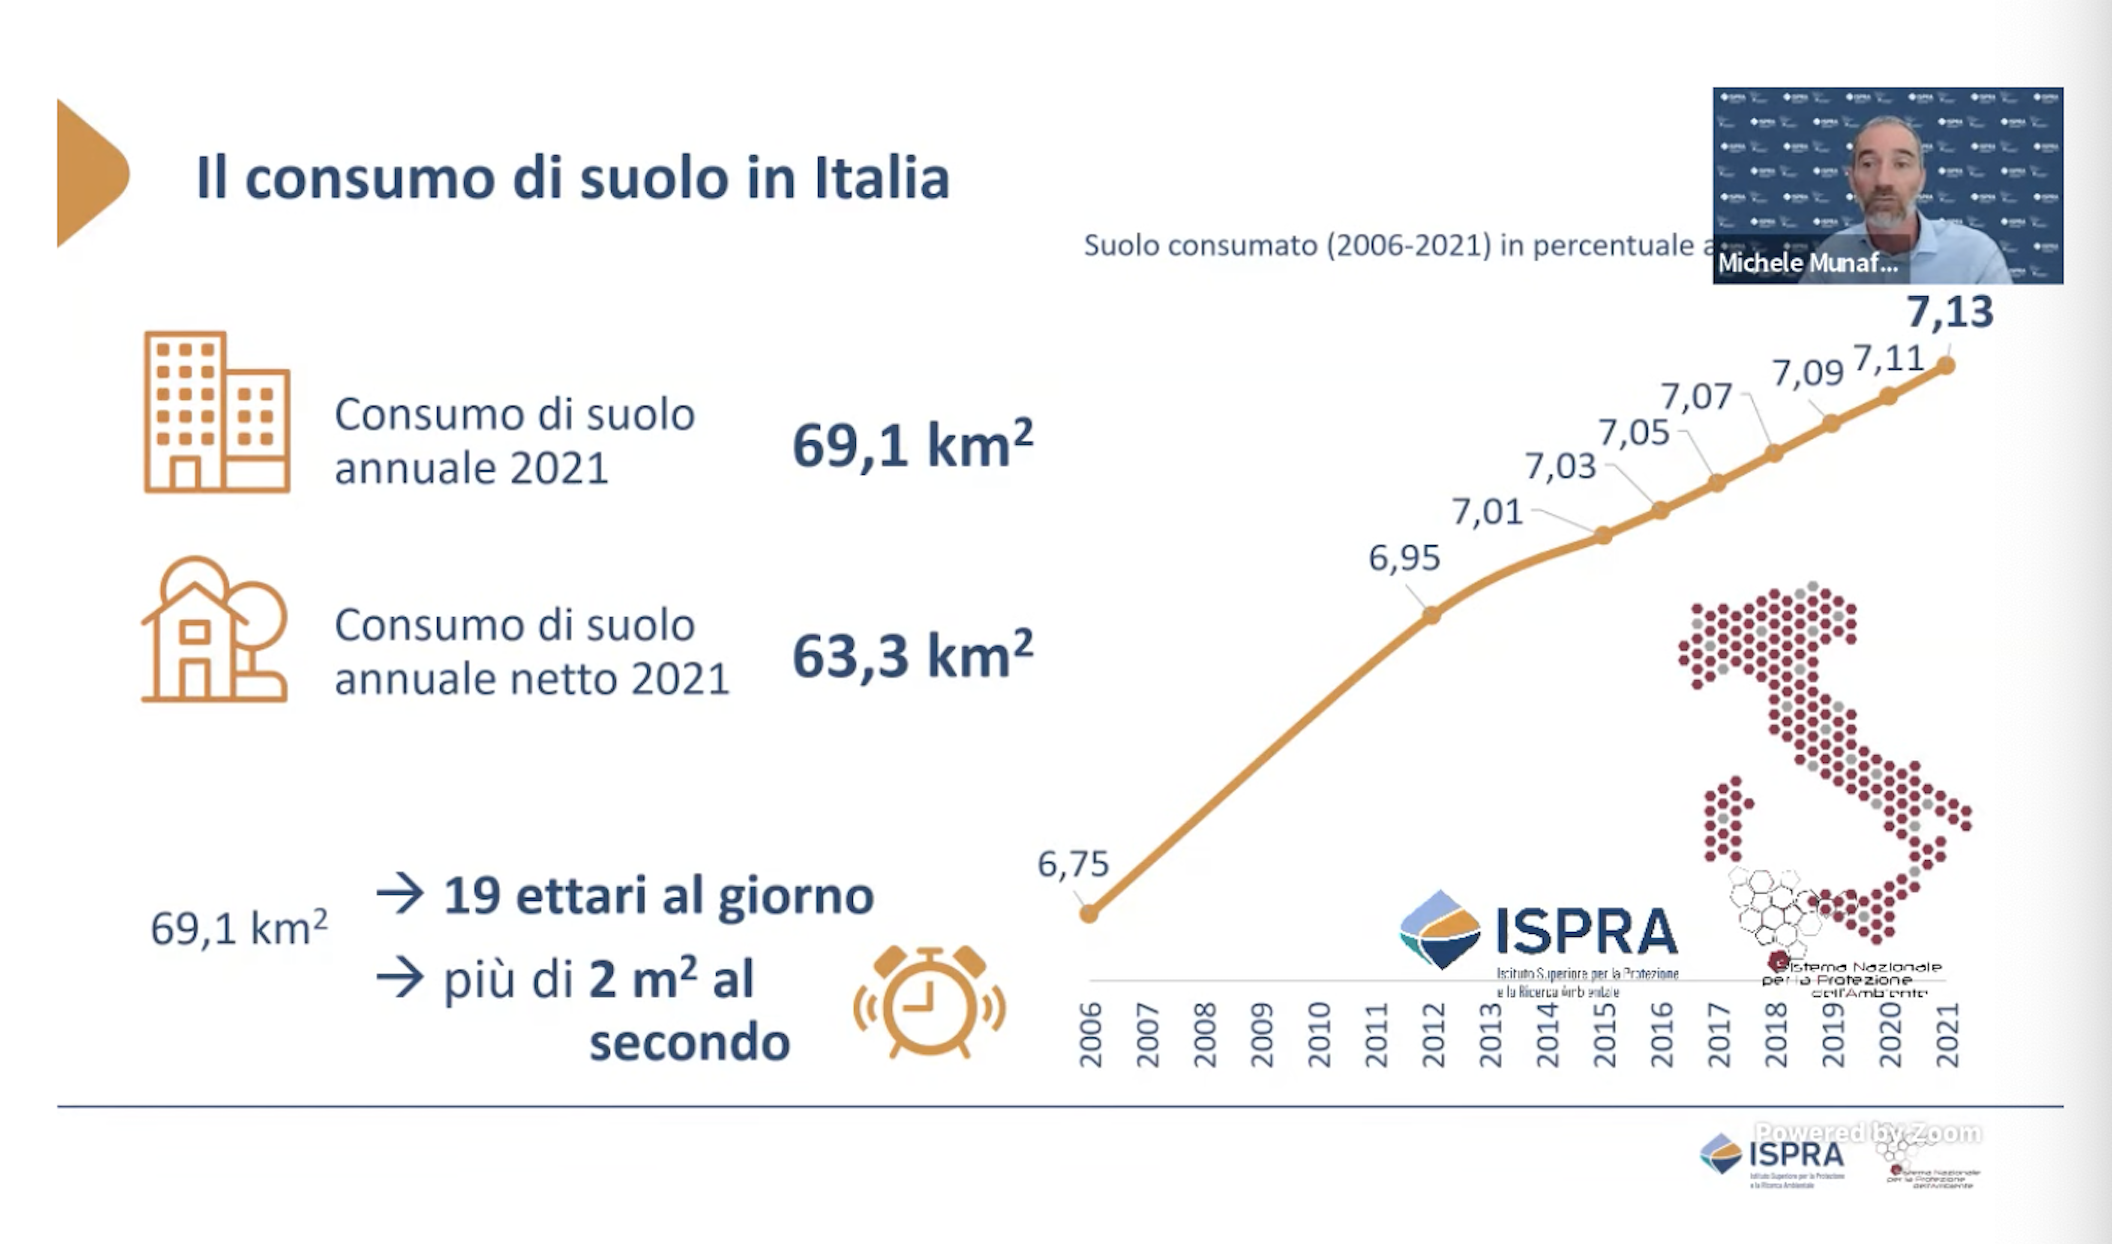 Il consumo di suolo i n italia